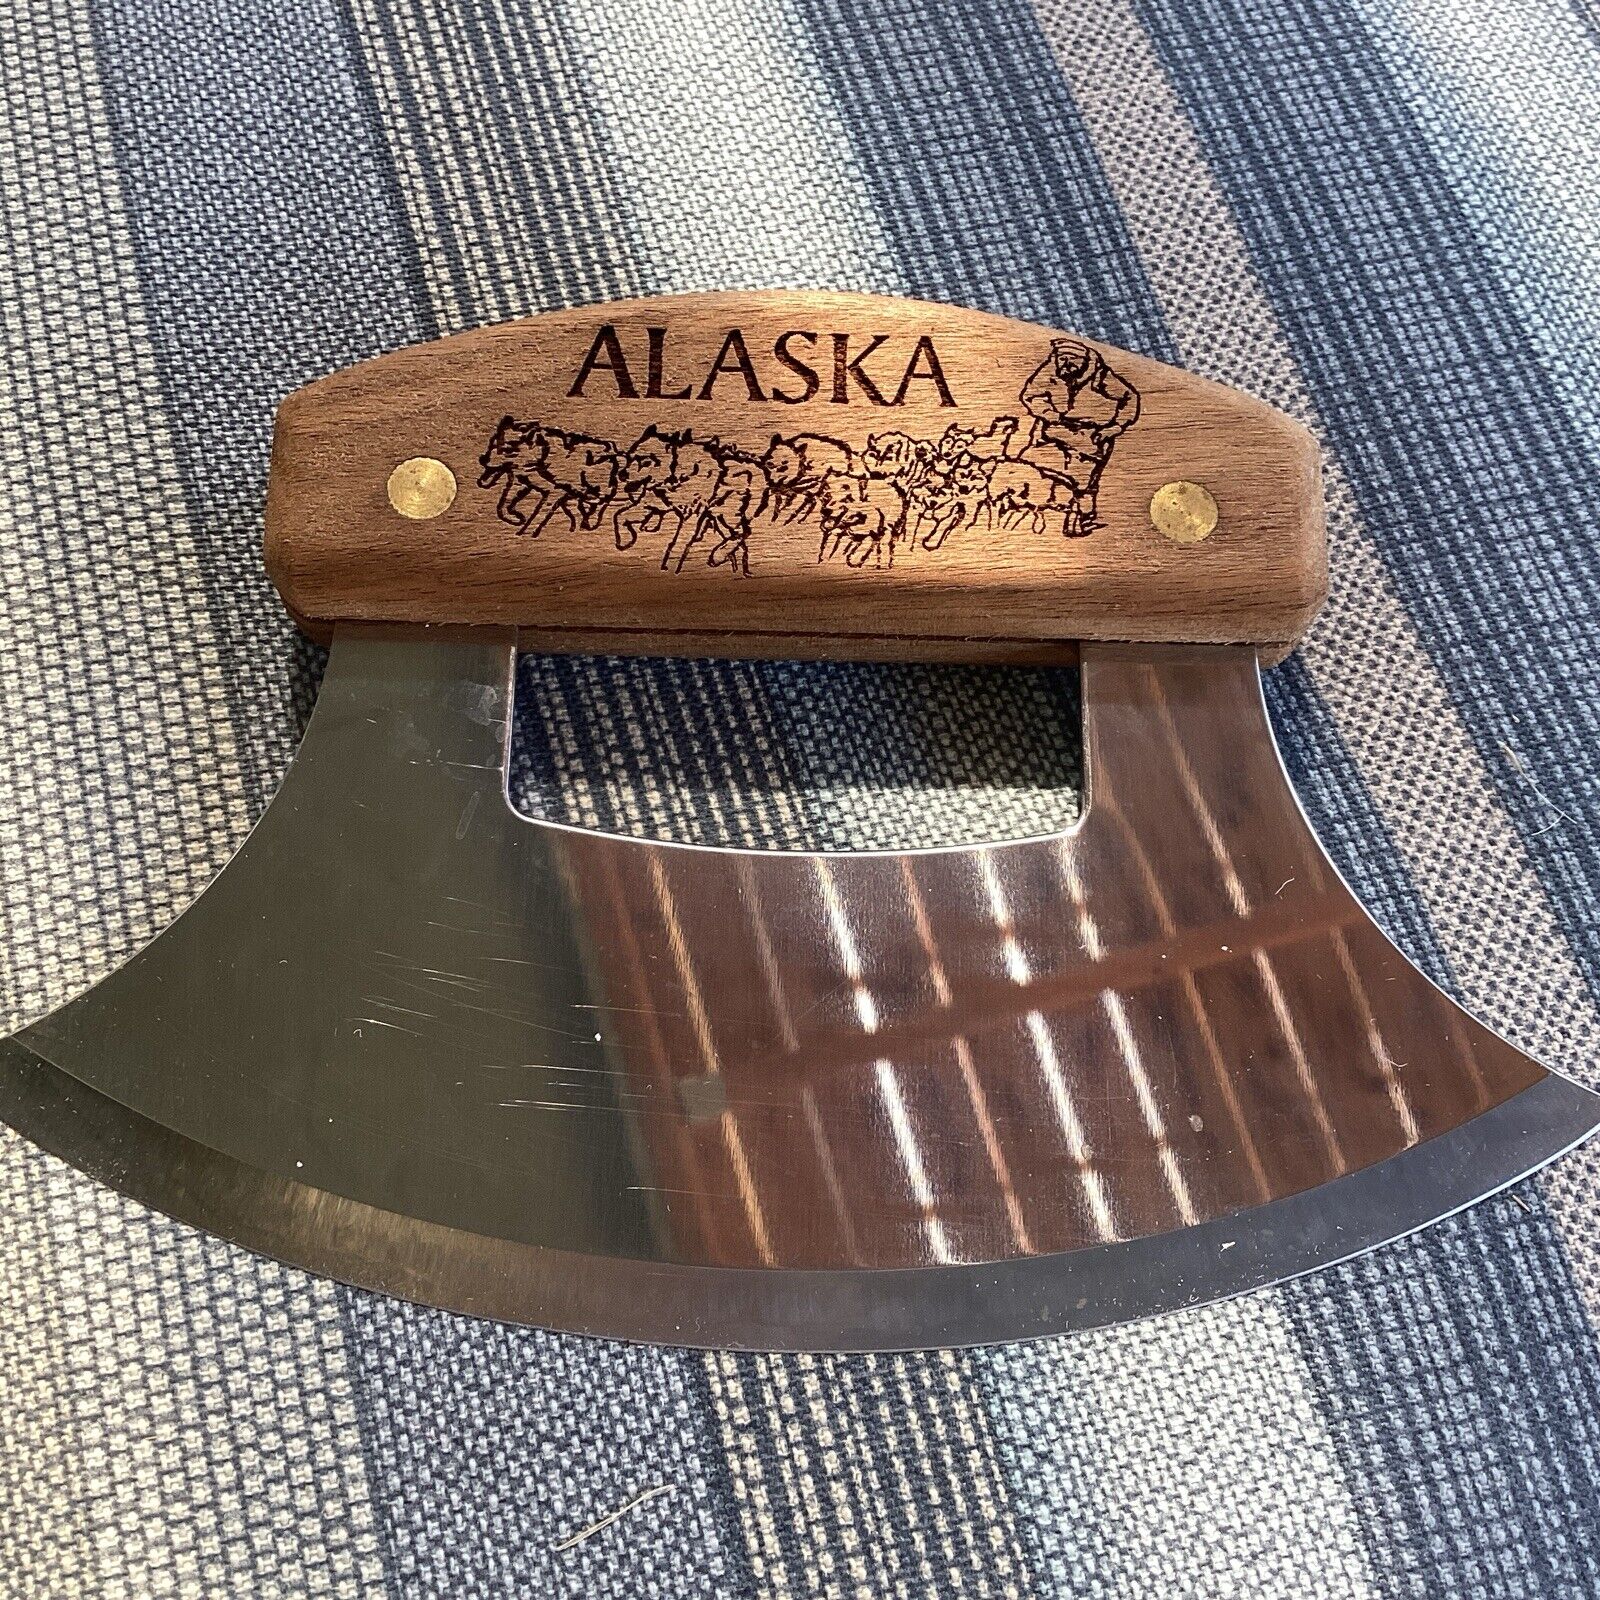 alaska ulu knife used